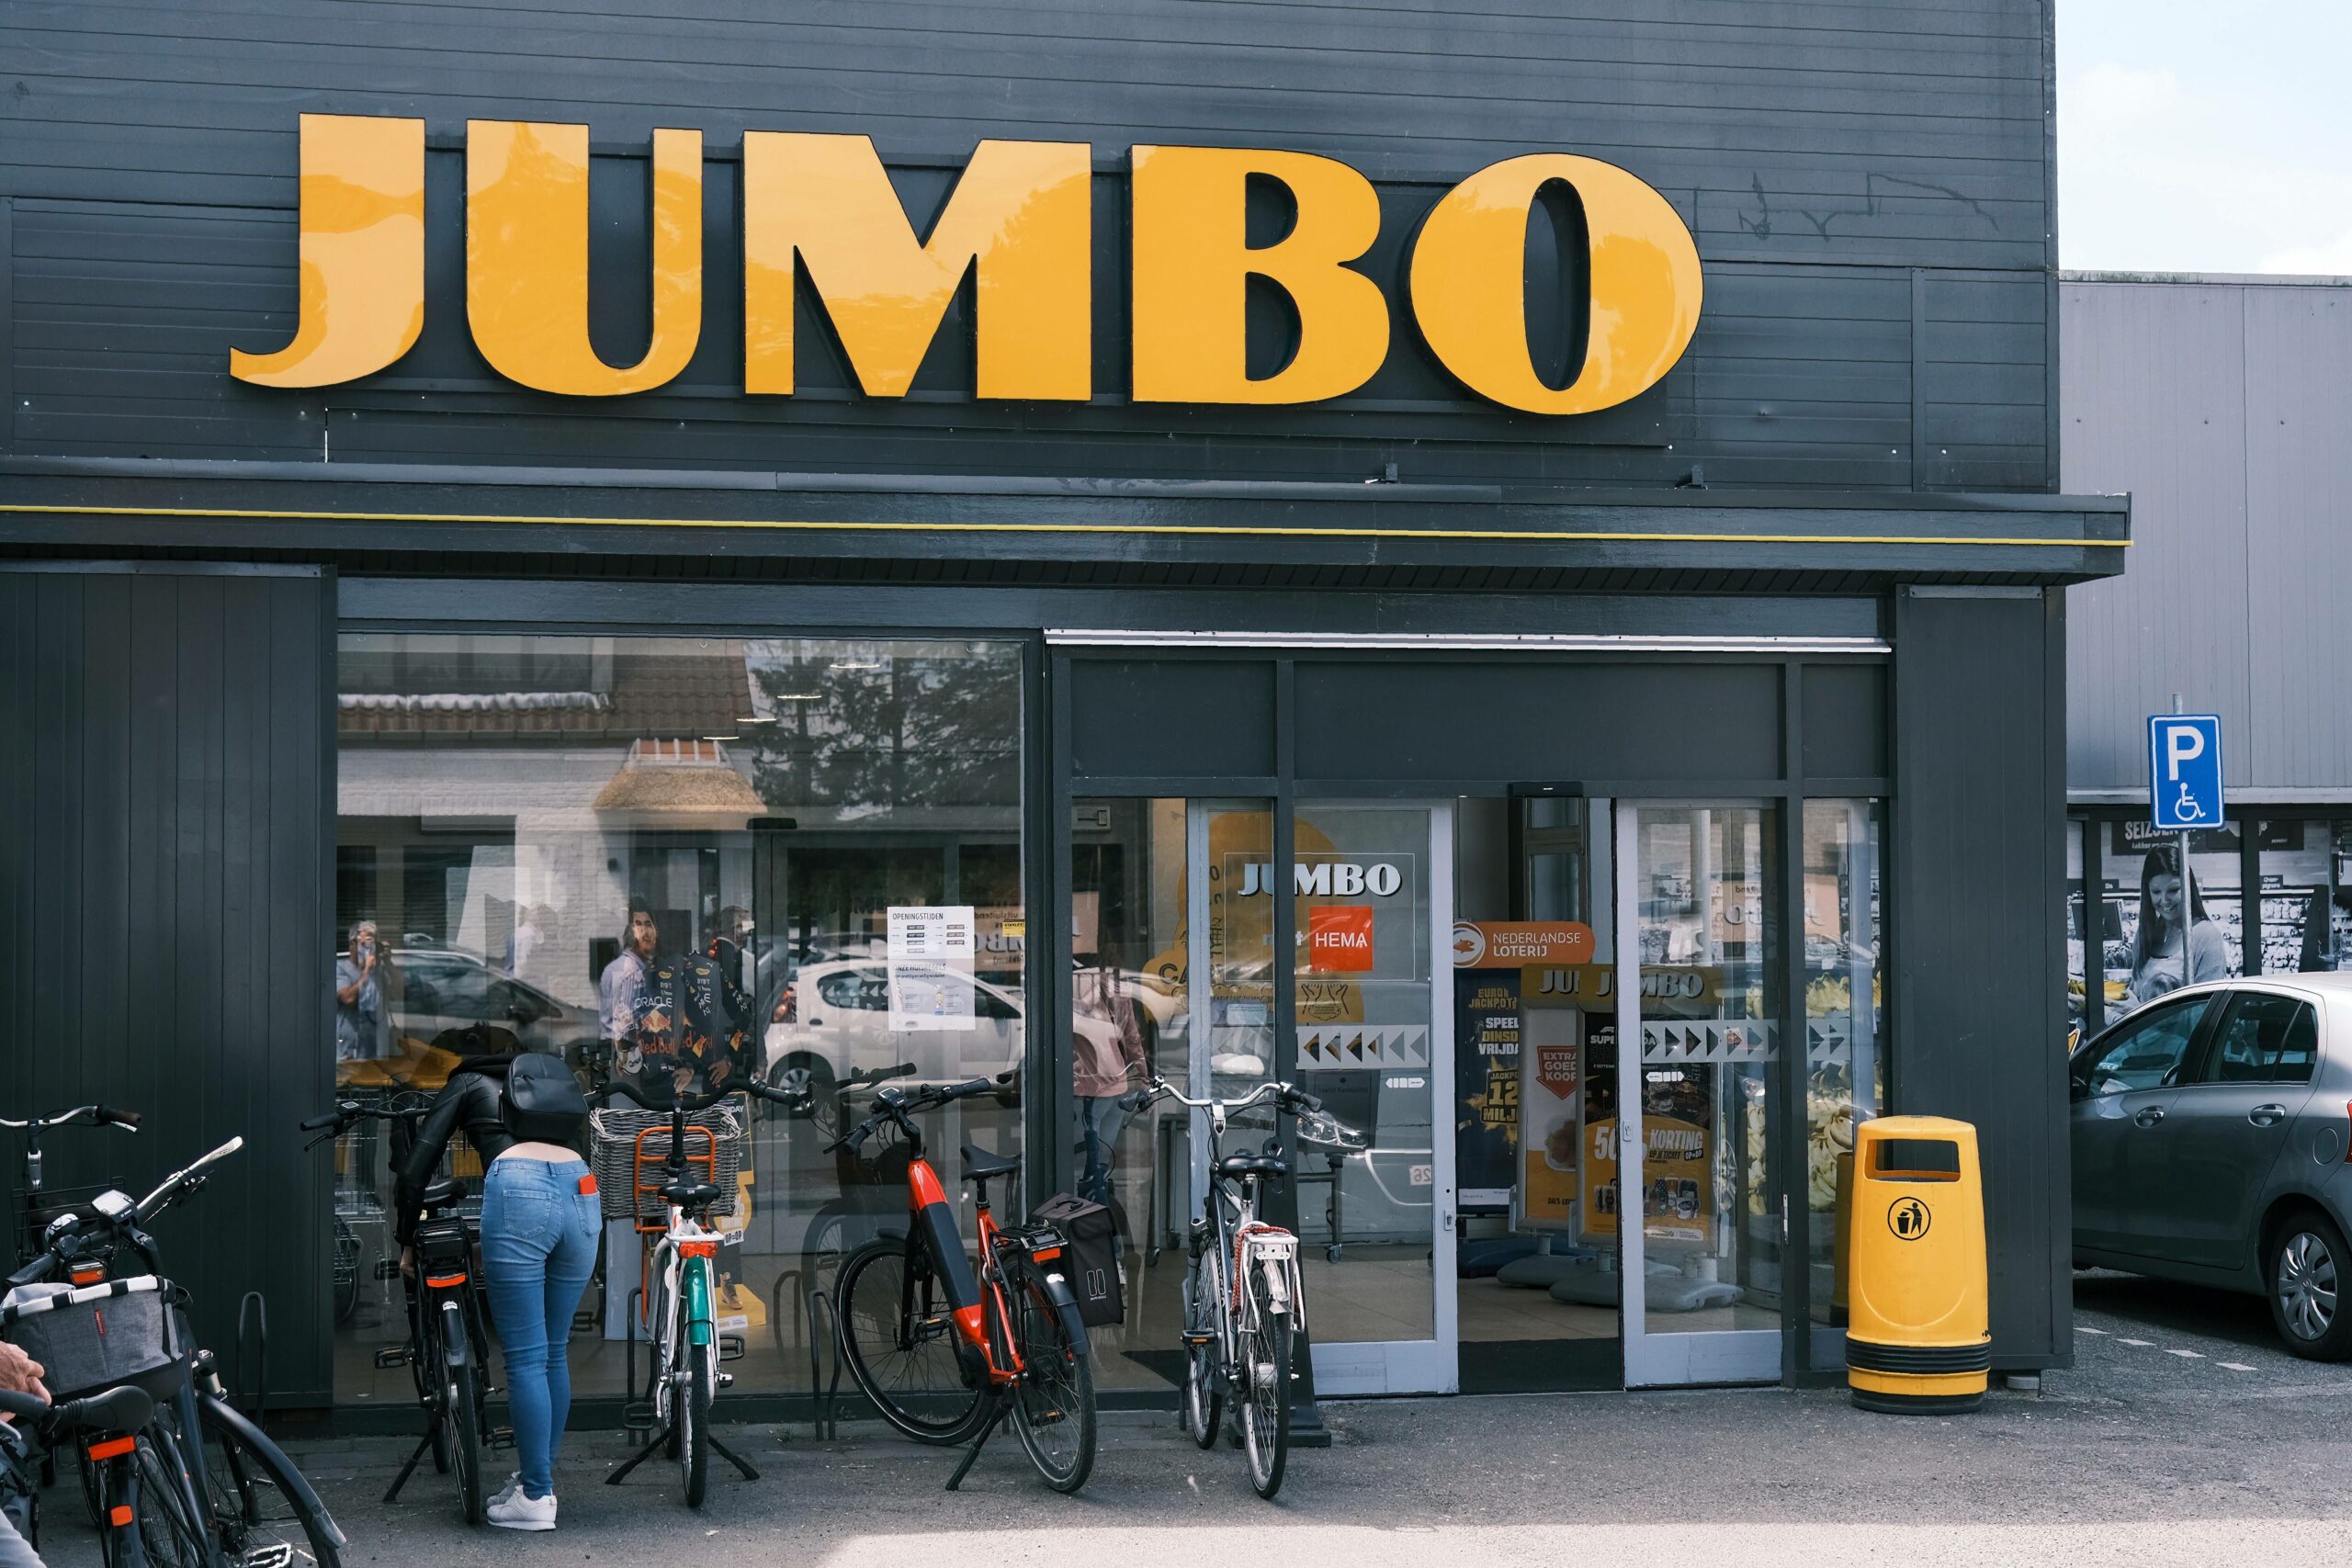 JUMBO ist eine Supermarktkette in den Niederlanden.